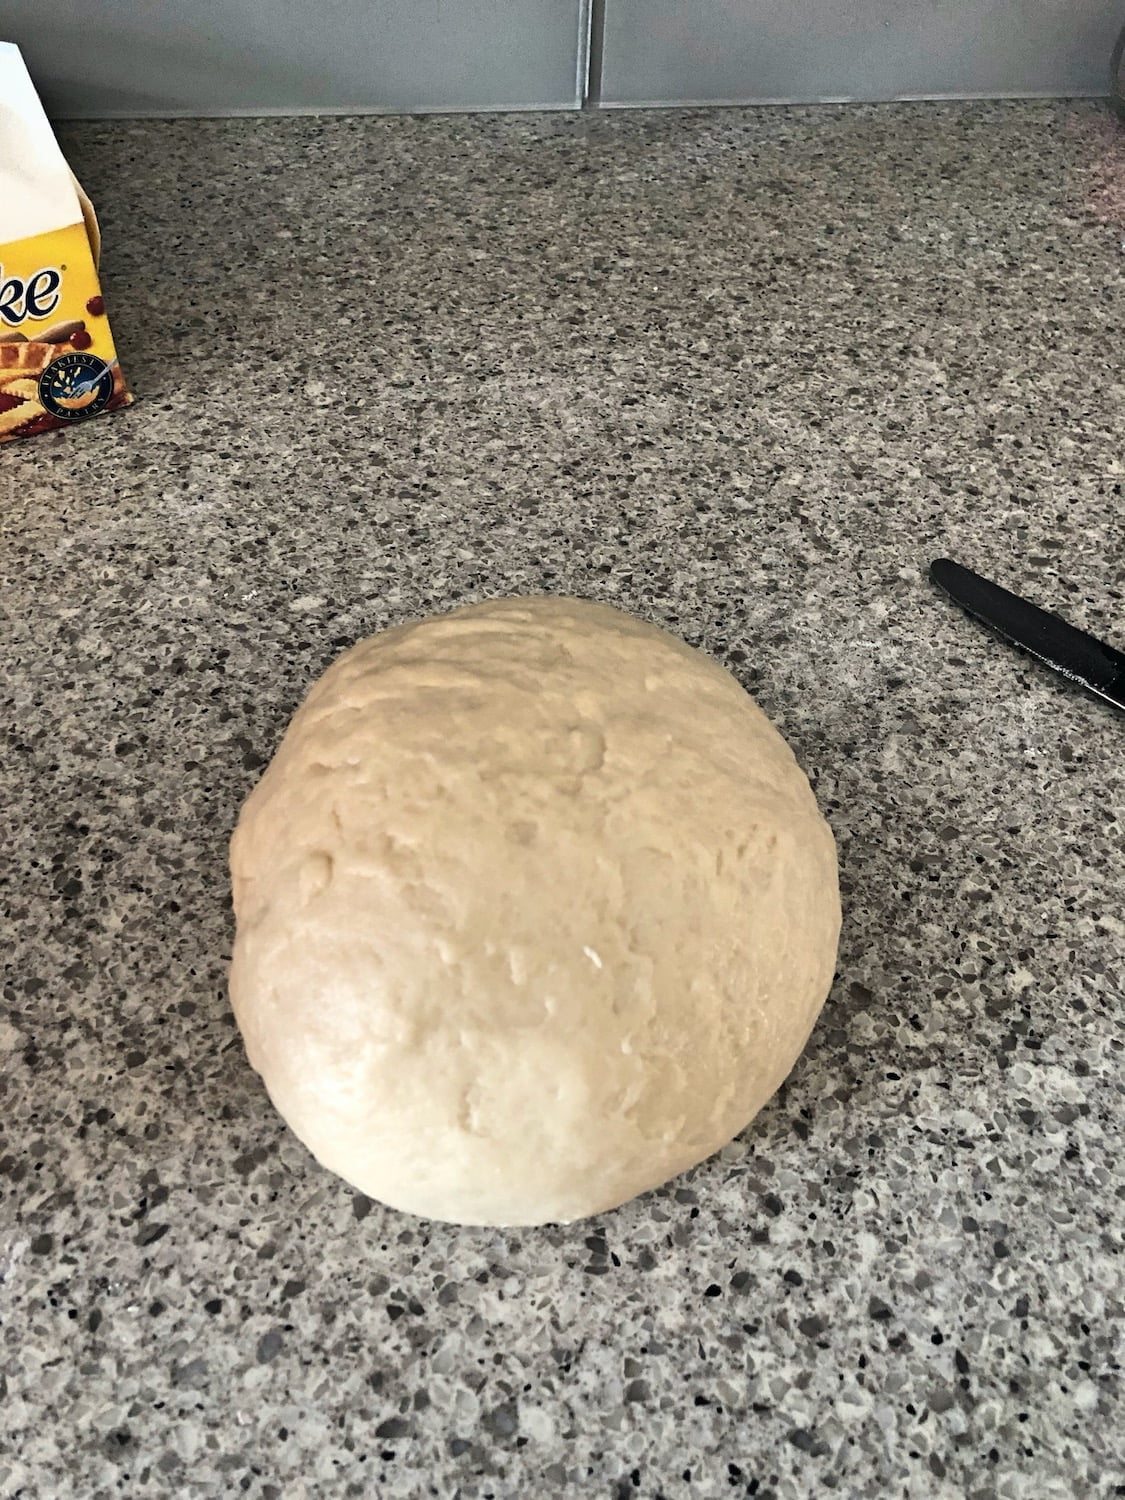 Cinnamon Bun Dough Ball